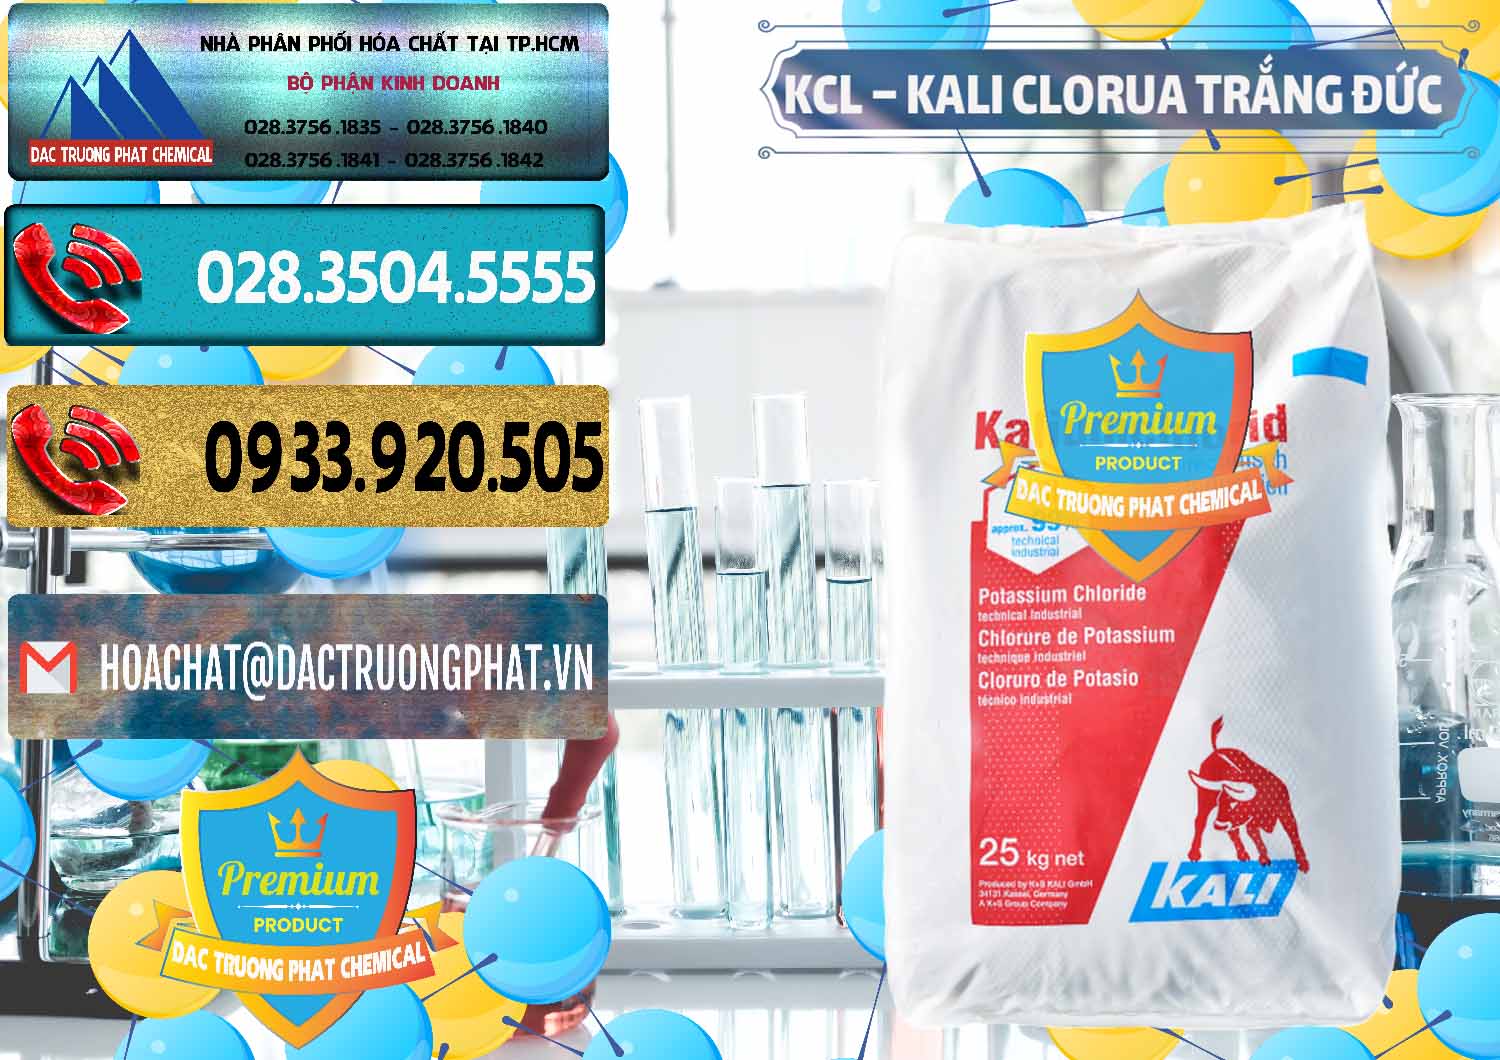 Cty bán ( cung cấp ) KCL – Kali Clorua Trắng Đức Germany - 0086 - Đơn vị phân phối - cung cấp hóa chất tại TP.HCM - hoachatdetnhuom.com